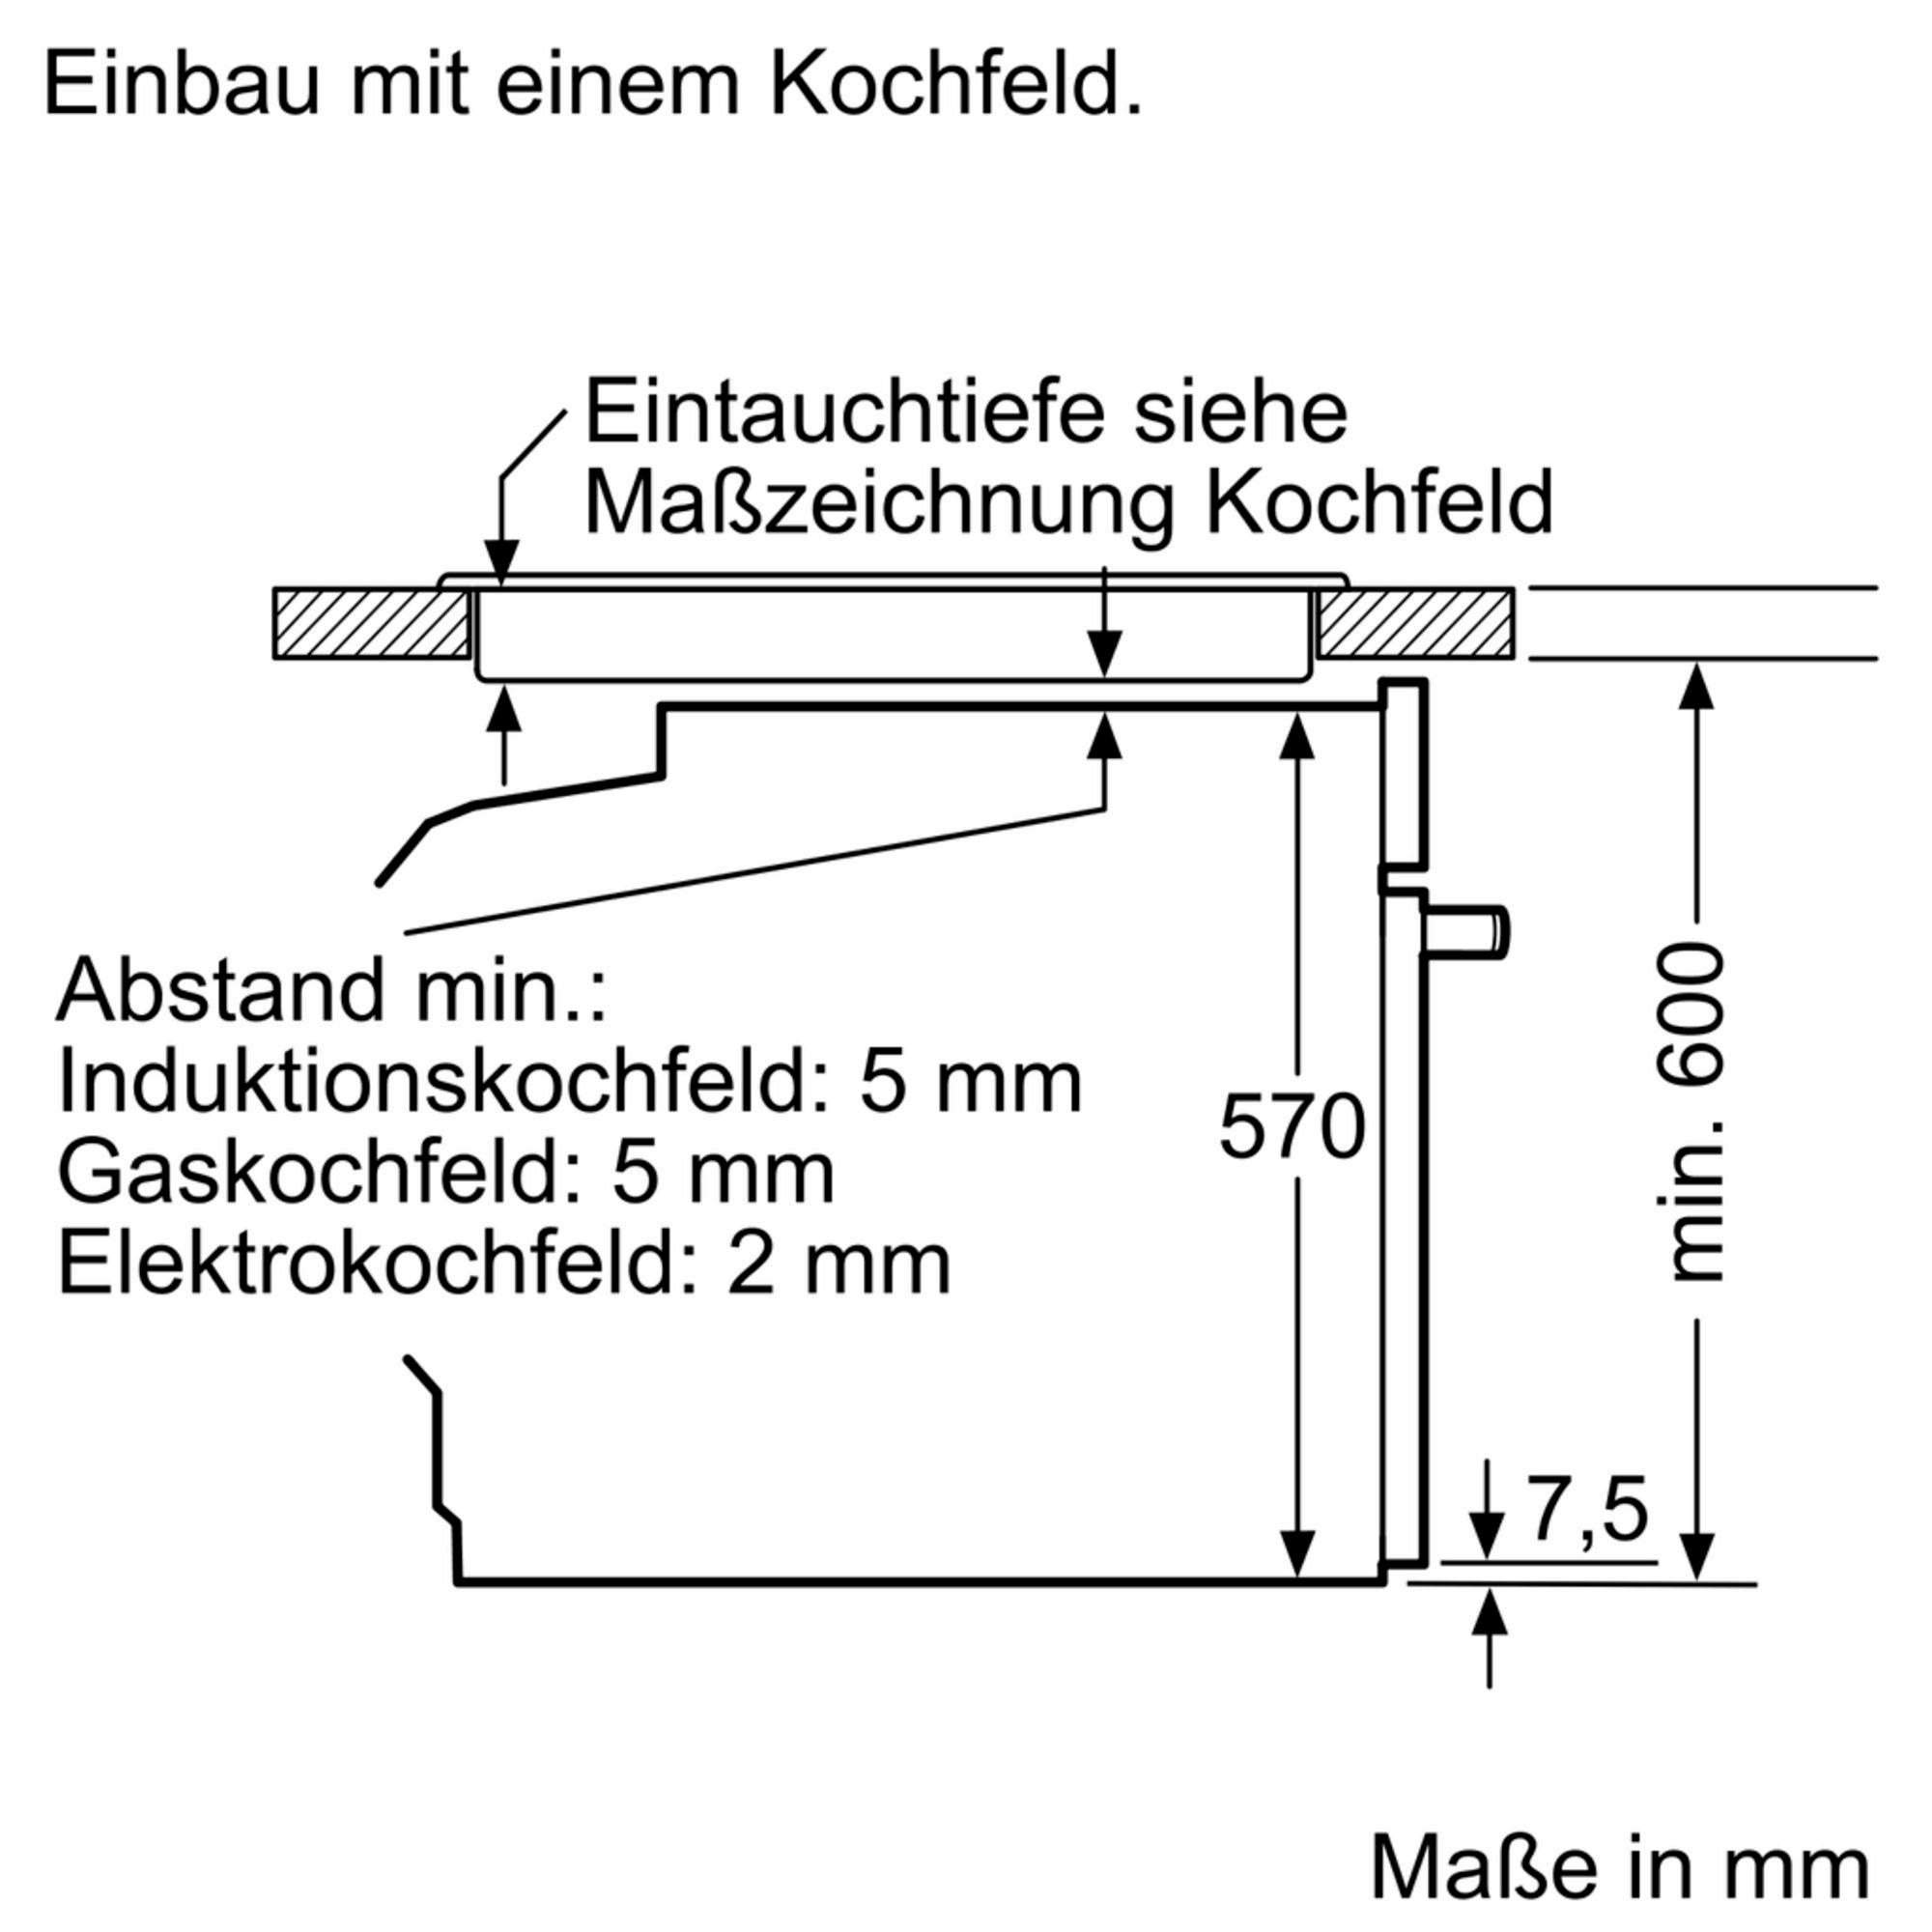 71 Liter) (Elektrokochfeld, PQ521KB00 iQ500, SIEMENS A, Einbauherdset